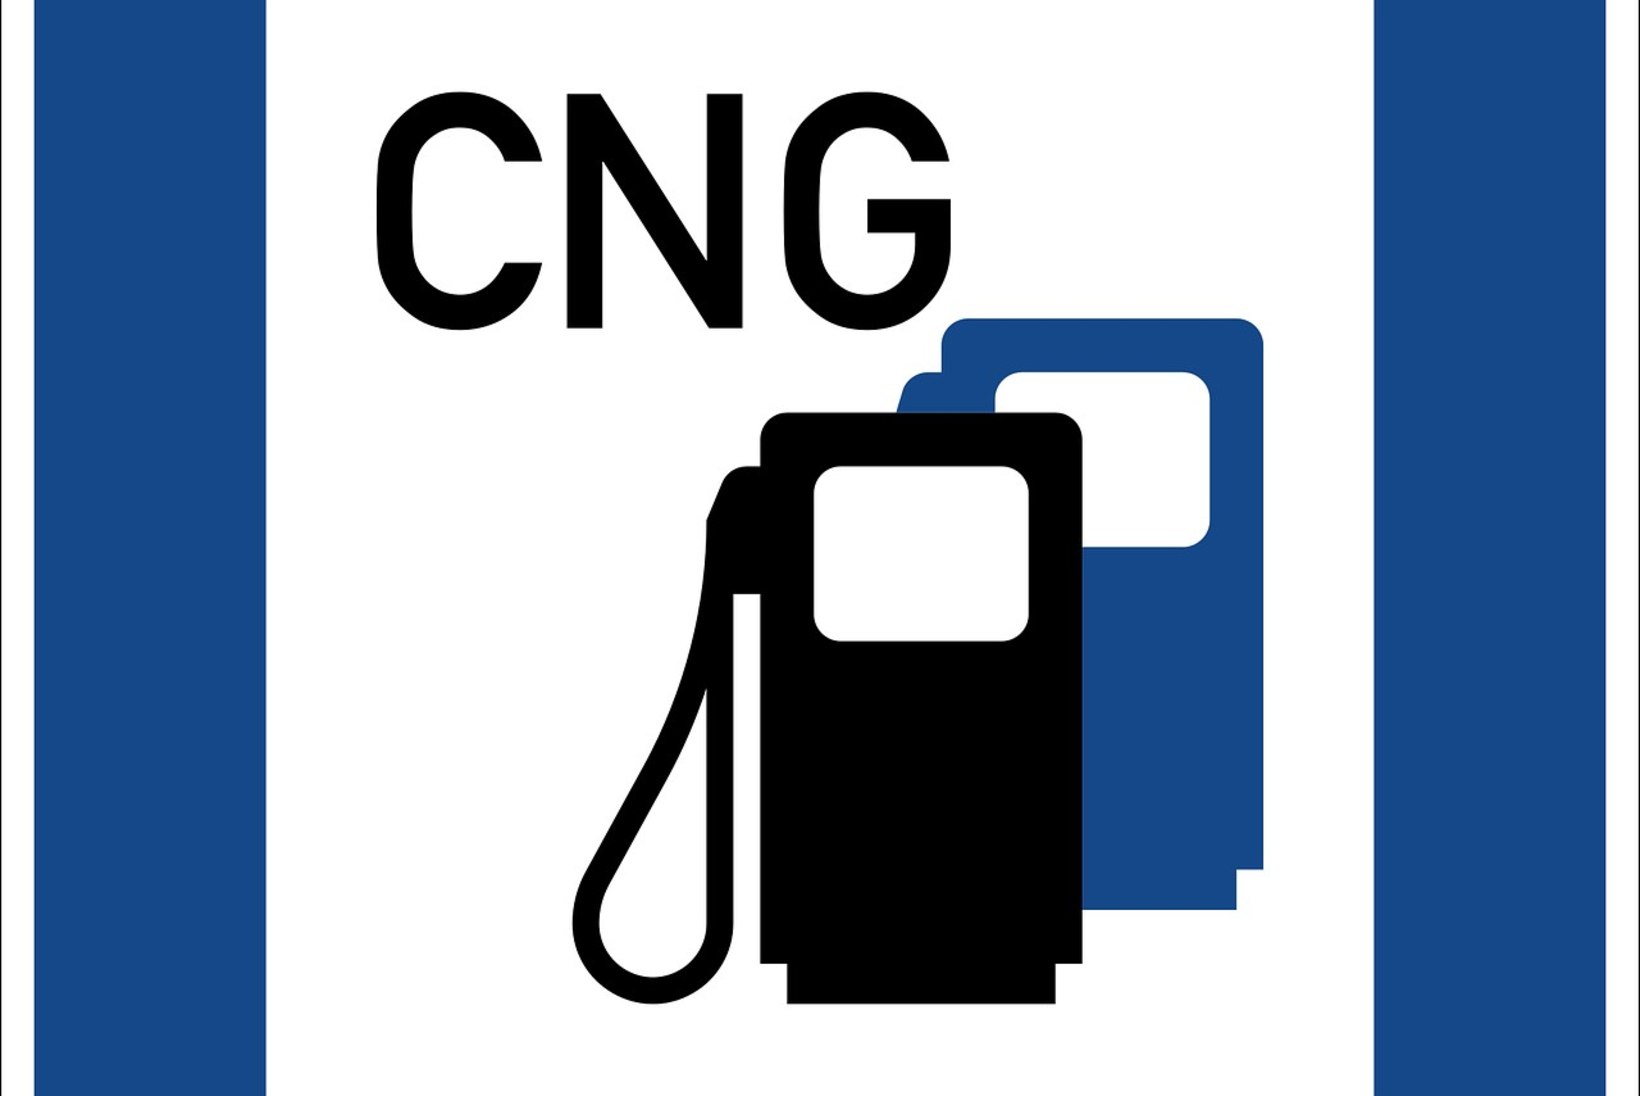 Eksperiment: CNG ehk surugaas on autokütusena tõsiseltvõetav alternatiiv